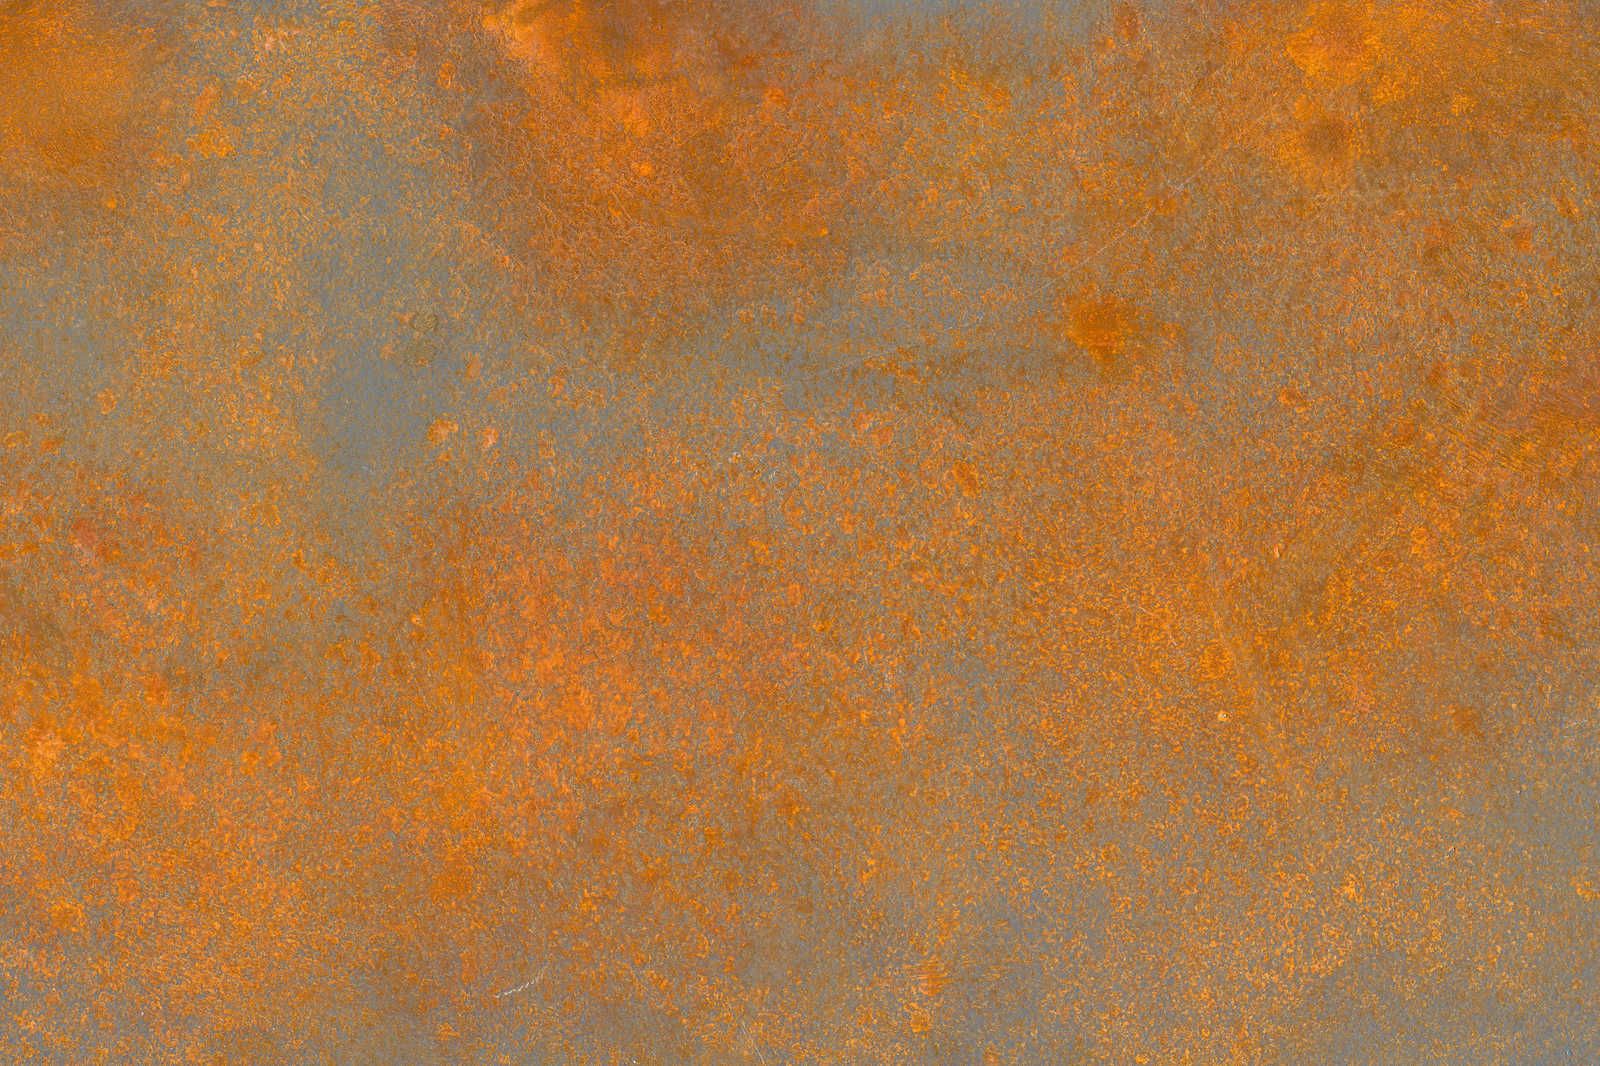             Toile aspect rouille orange marron avec look usé - 1,20 m x 0,80 m
        